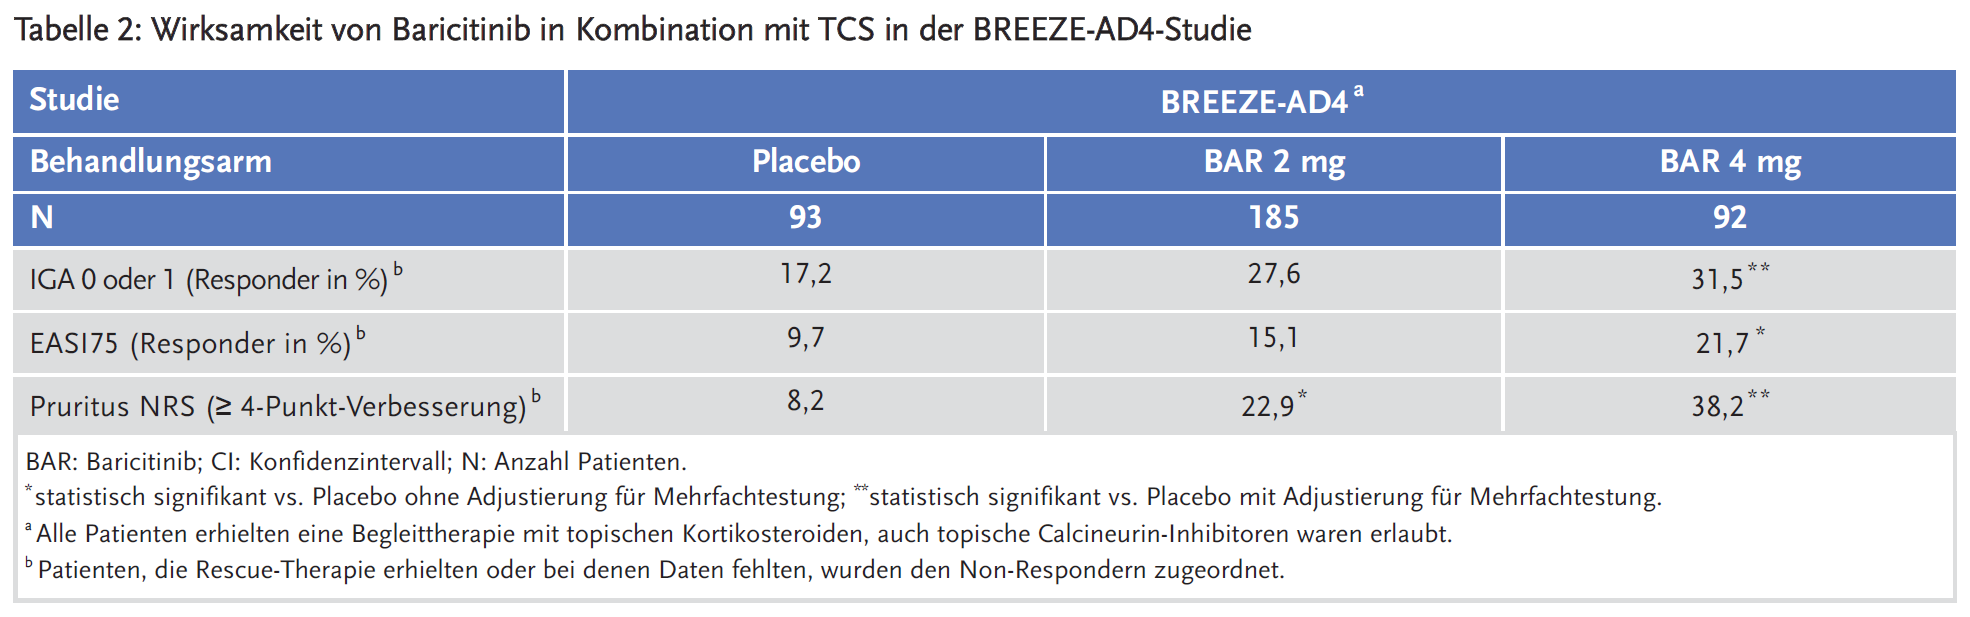 Tabelle 2: Wirksamkeit von Baricitinib in Kombination mit TCS in der BREEZE-AD4-Studie